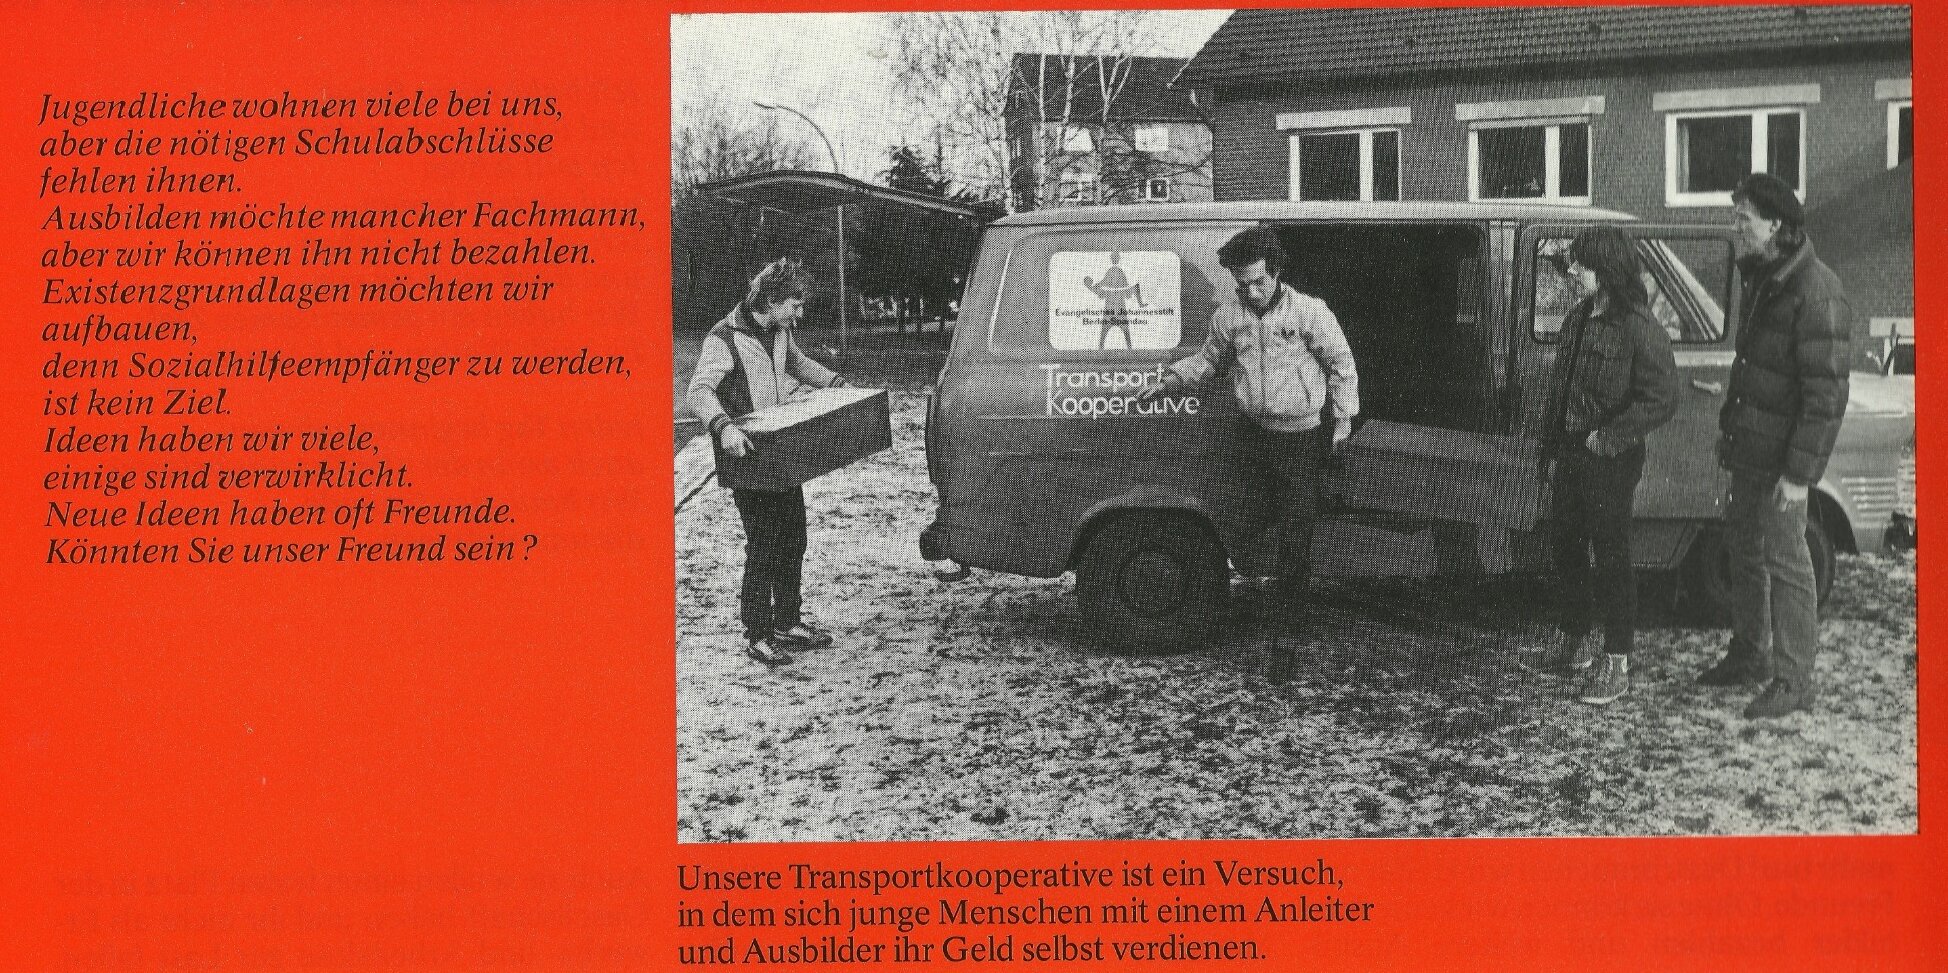 Ein Flyer der Transportkooperative aus dem historischen Archiv.